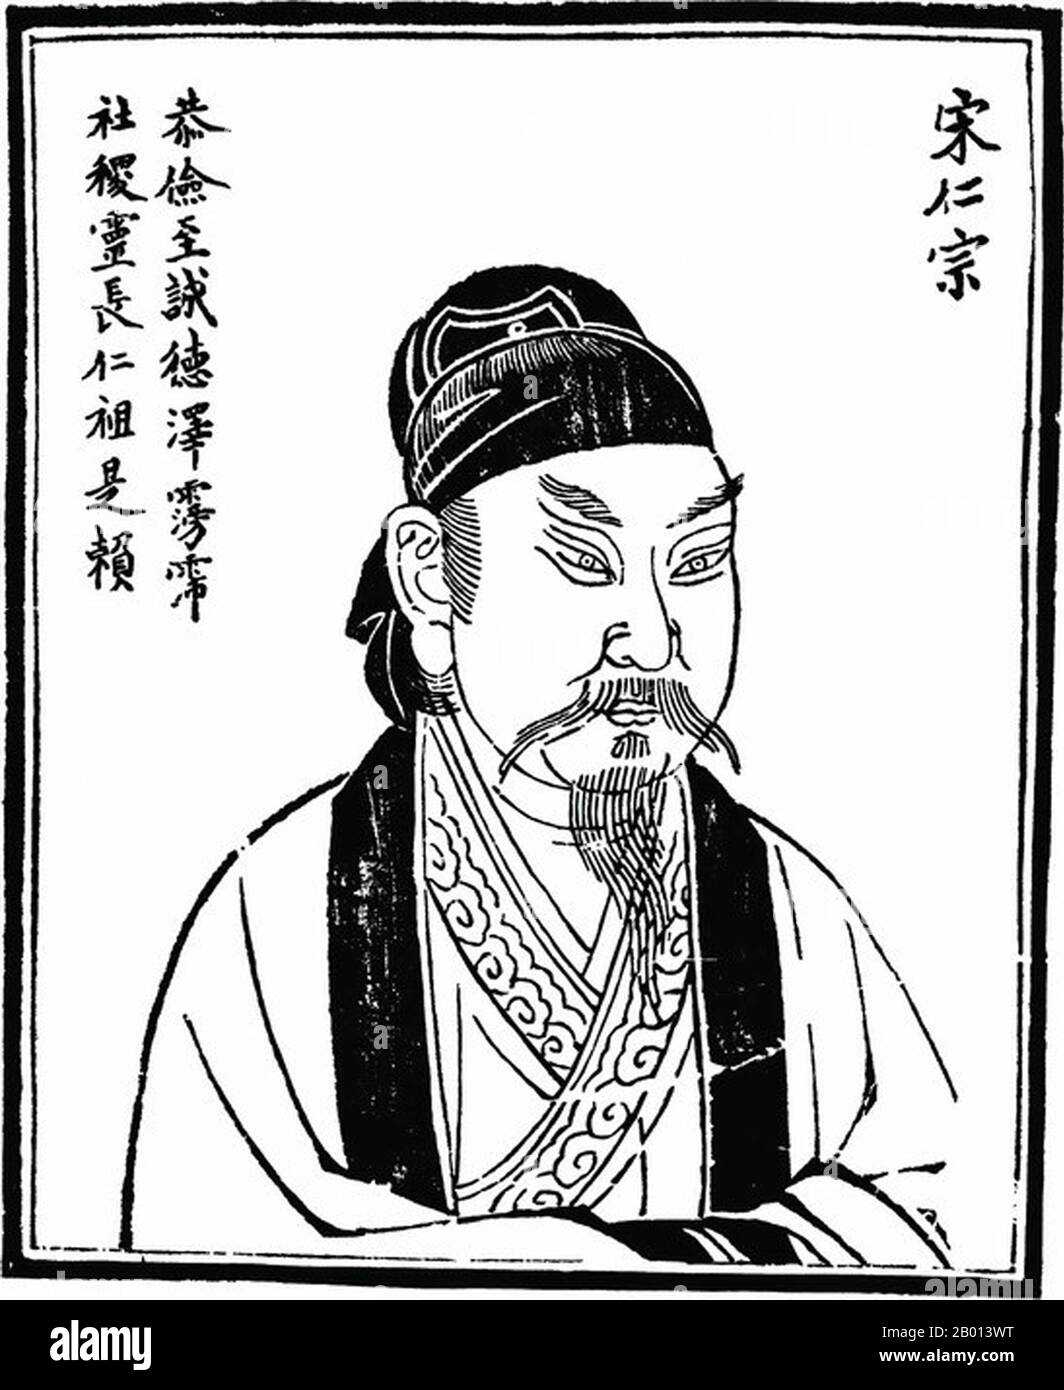 Chine : empereur Zhengzong (Zhao Heng, 23 décembre 968 - 23 mars 1022), 3e dirigeant de la dynastie Song (Nord) (r. 997-1022). Illustration, c. xviiie siècle. Zhenzong de Song, nom personnel Zhao Heng et connu auparavant sous le nom de Zhao Dechang, Zhao Yuanxiu et Zhao Yuankan, était le troisième empereur de la dynastie Song. Son règne a été noté pour la consolidation du pouvoir et le renforcement de la dynastie. Le pays a prospéré, et sa puissance militaire a été renforcée. Banque D'Images